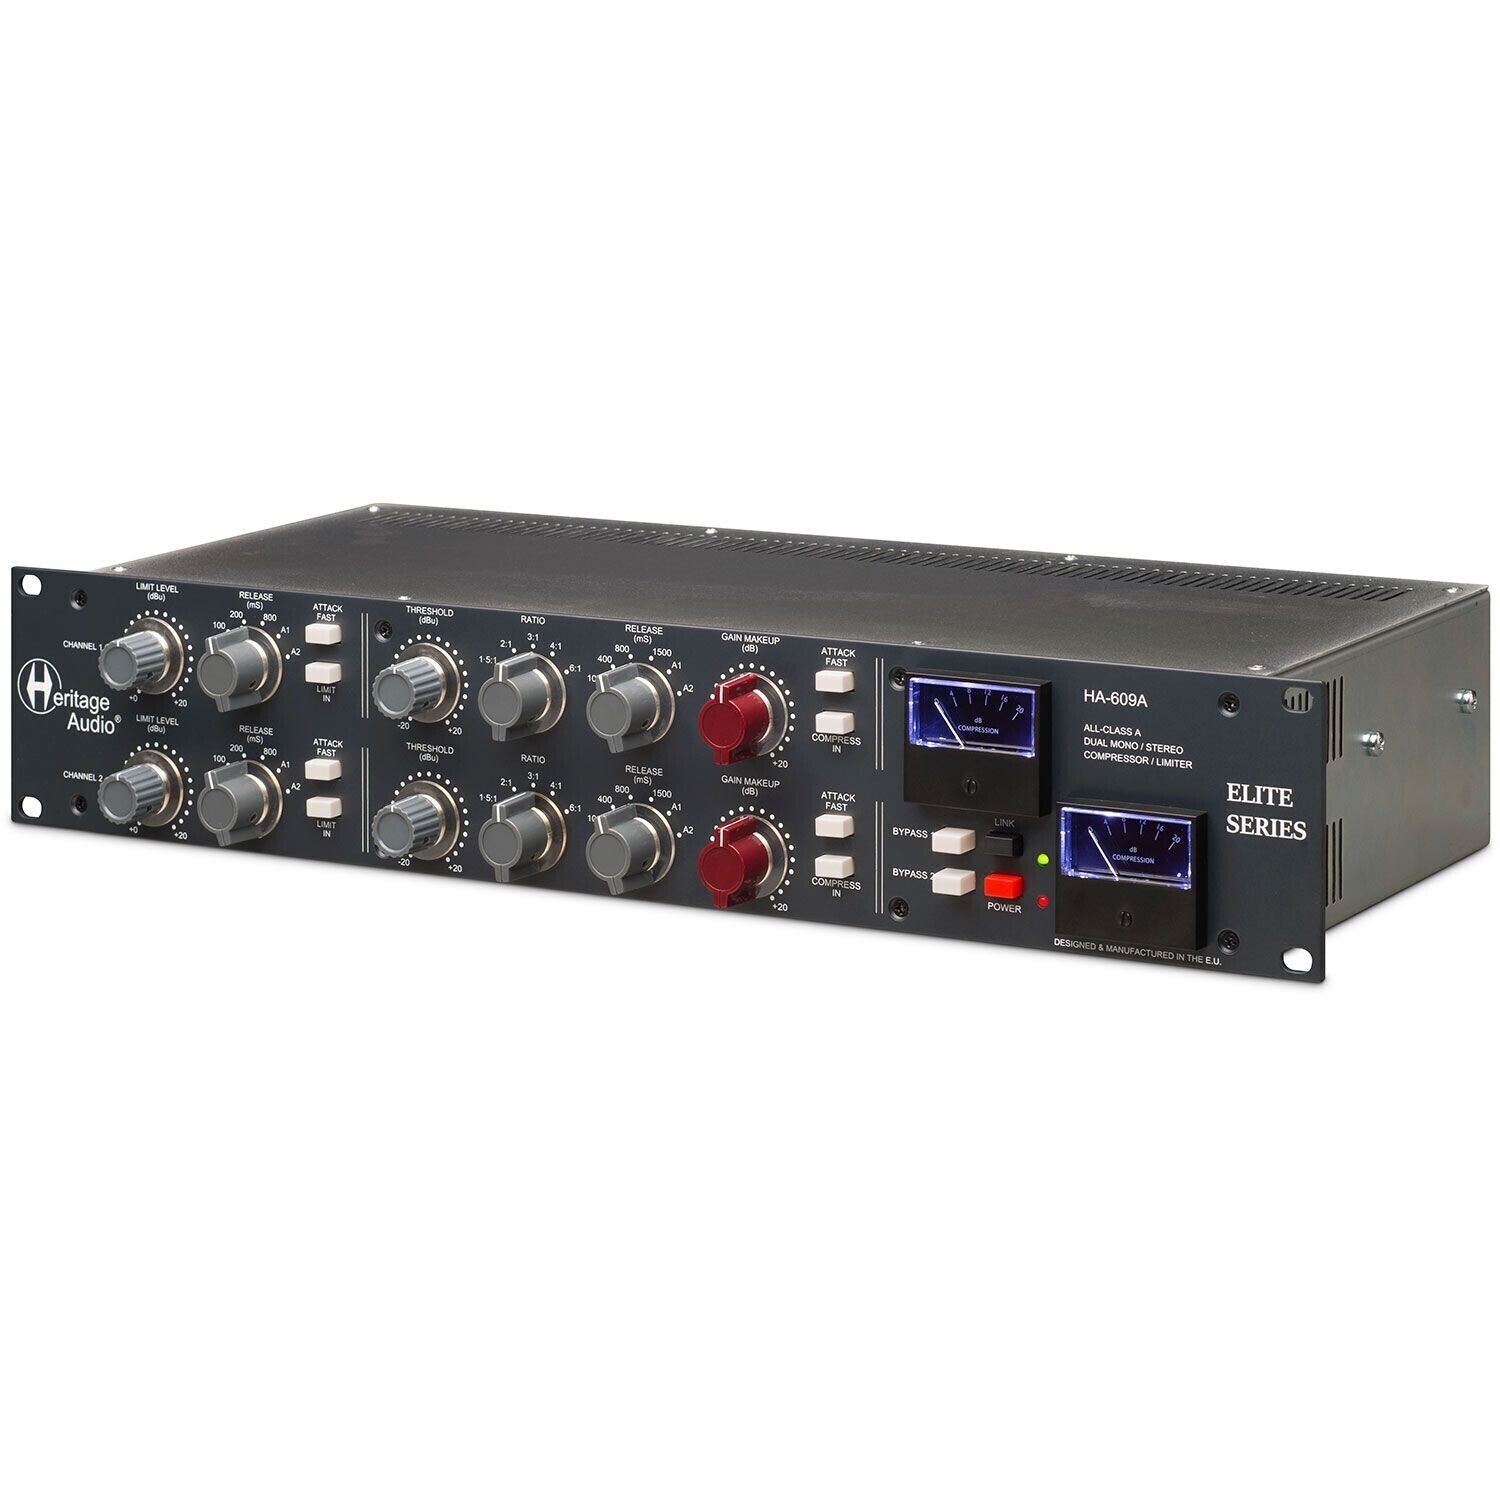 Heritage Audio 609A Elite по цене 186 560.00 ₽